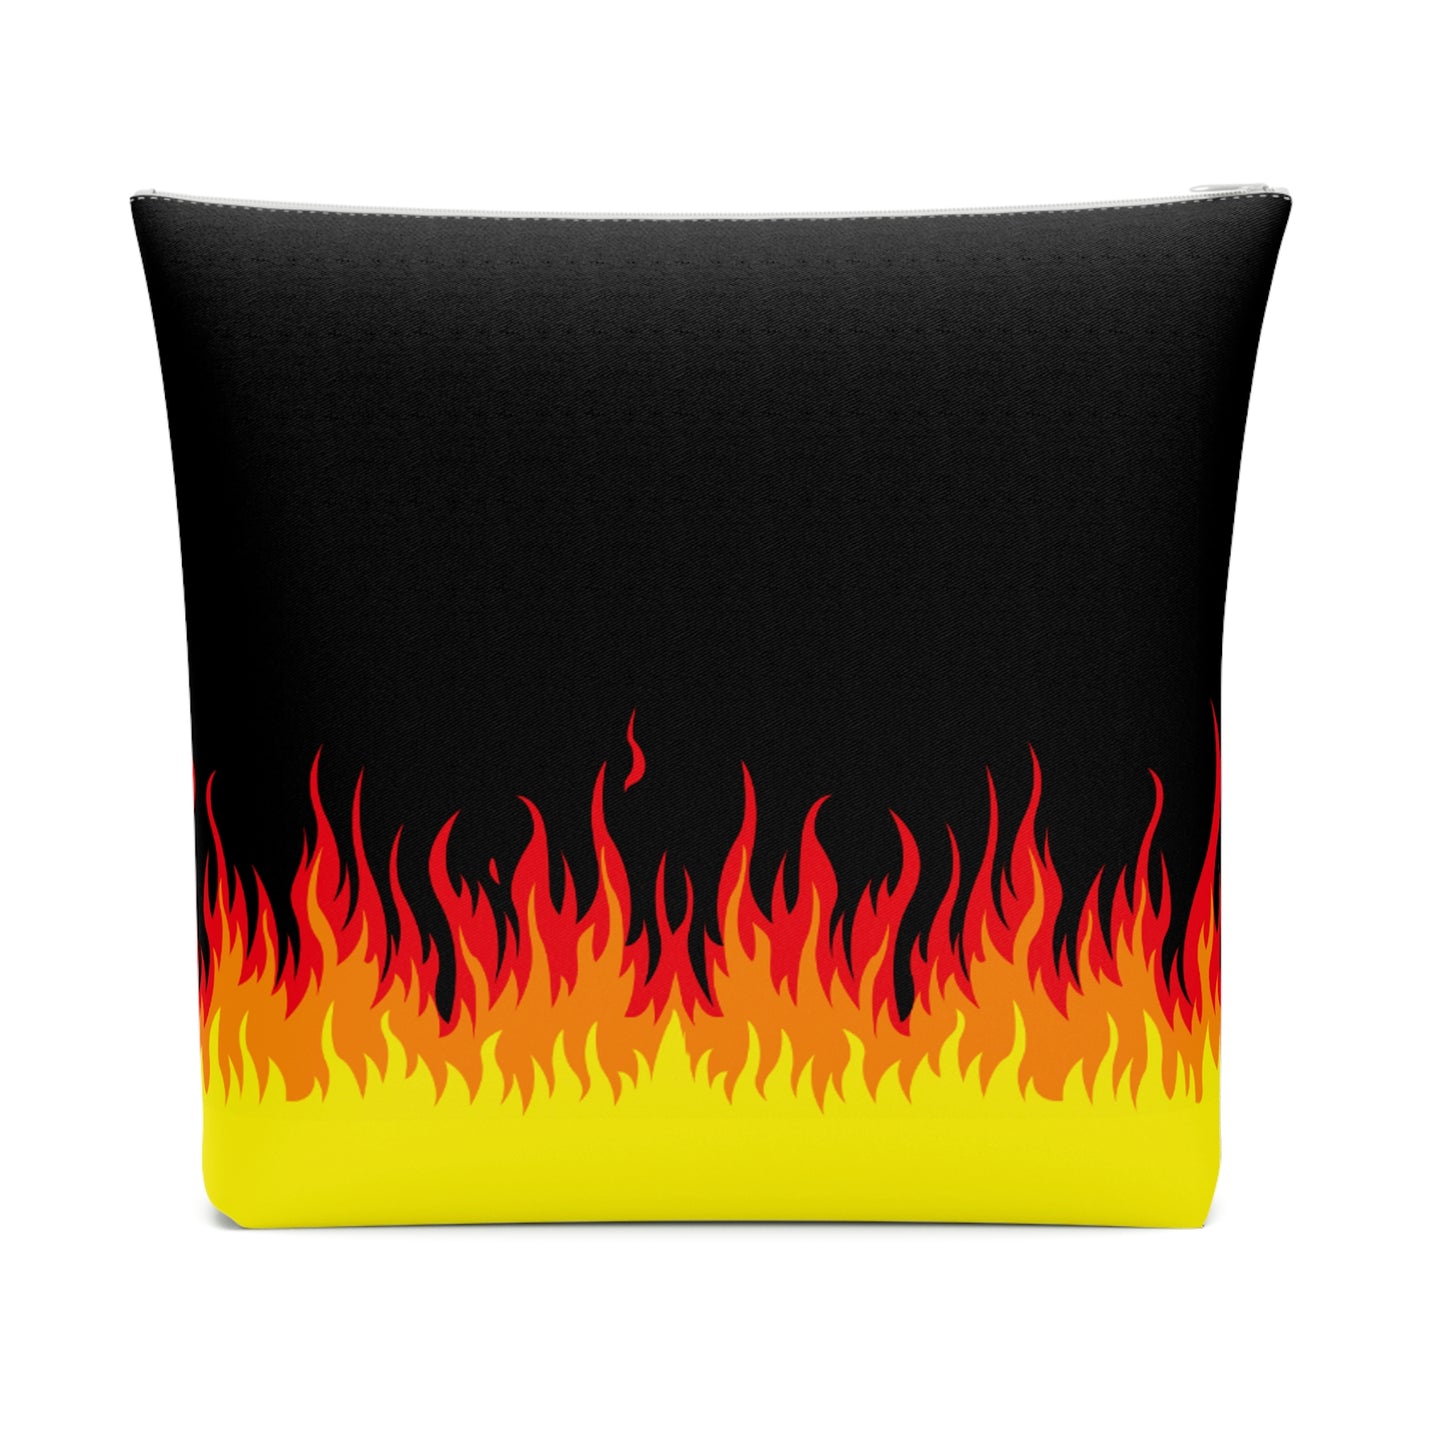 Lit Flames of Hell Retro Flames Punk Makeup Bag